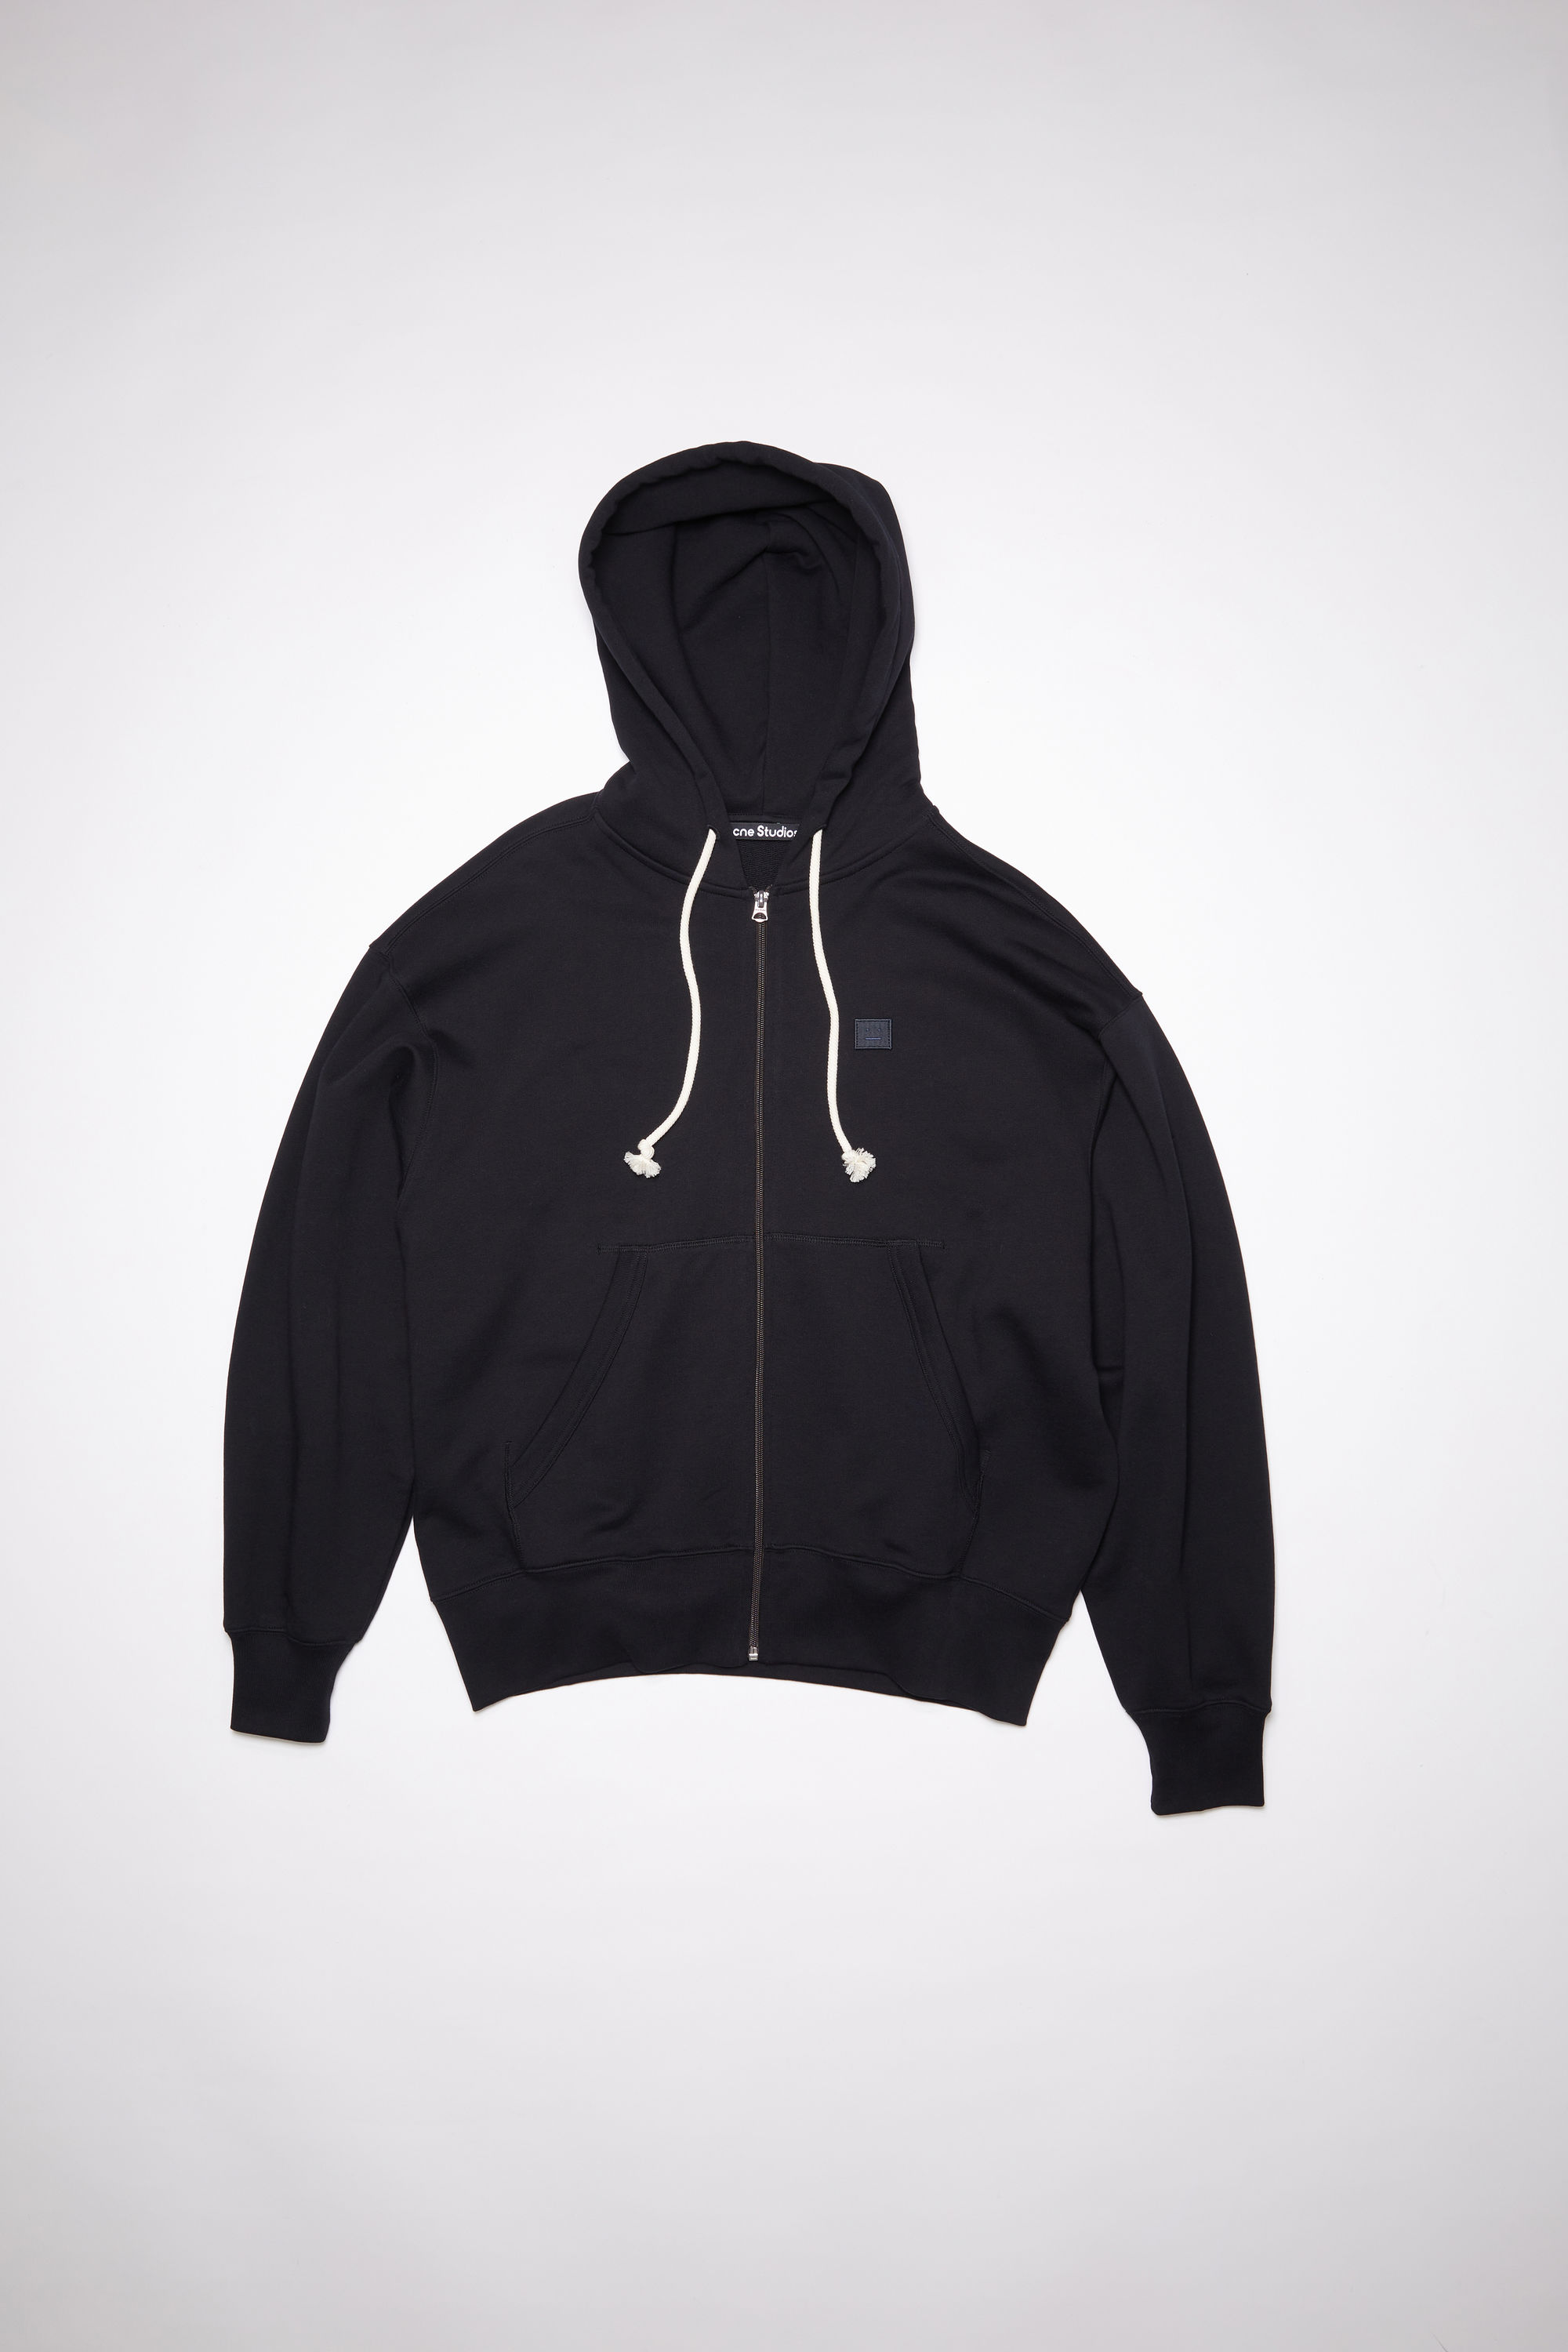 Acne Studios Hooded Zippered Sweatshirt In Black